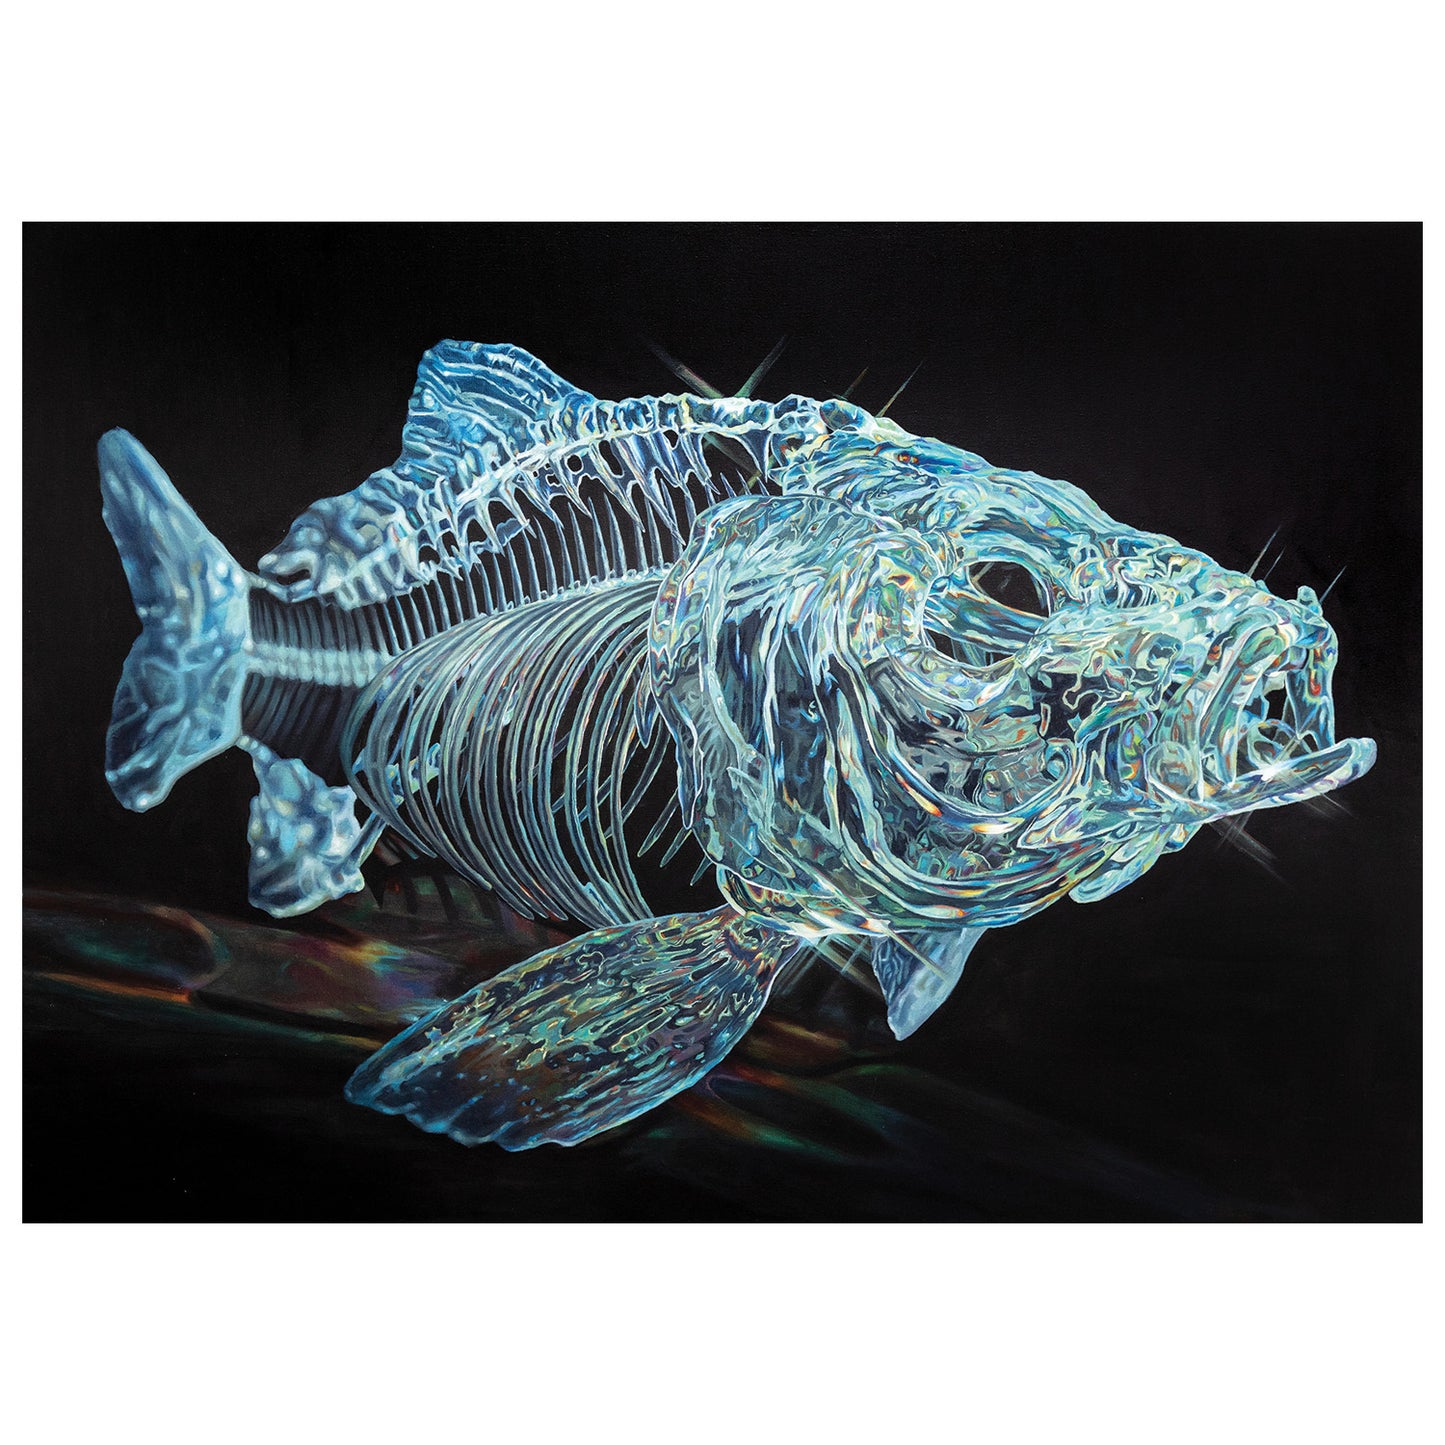 Vance Print - 水晶鱼 (Crystal Fish)